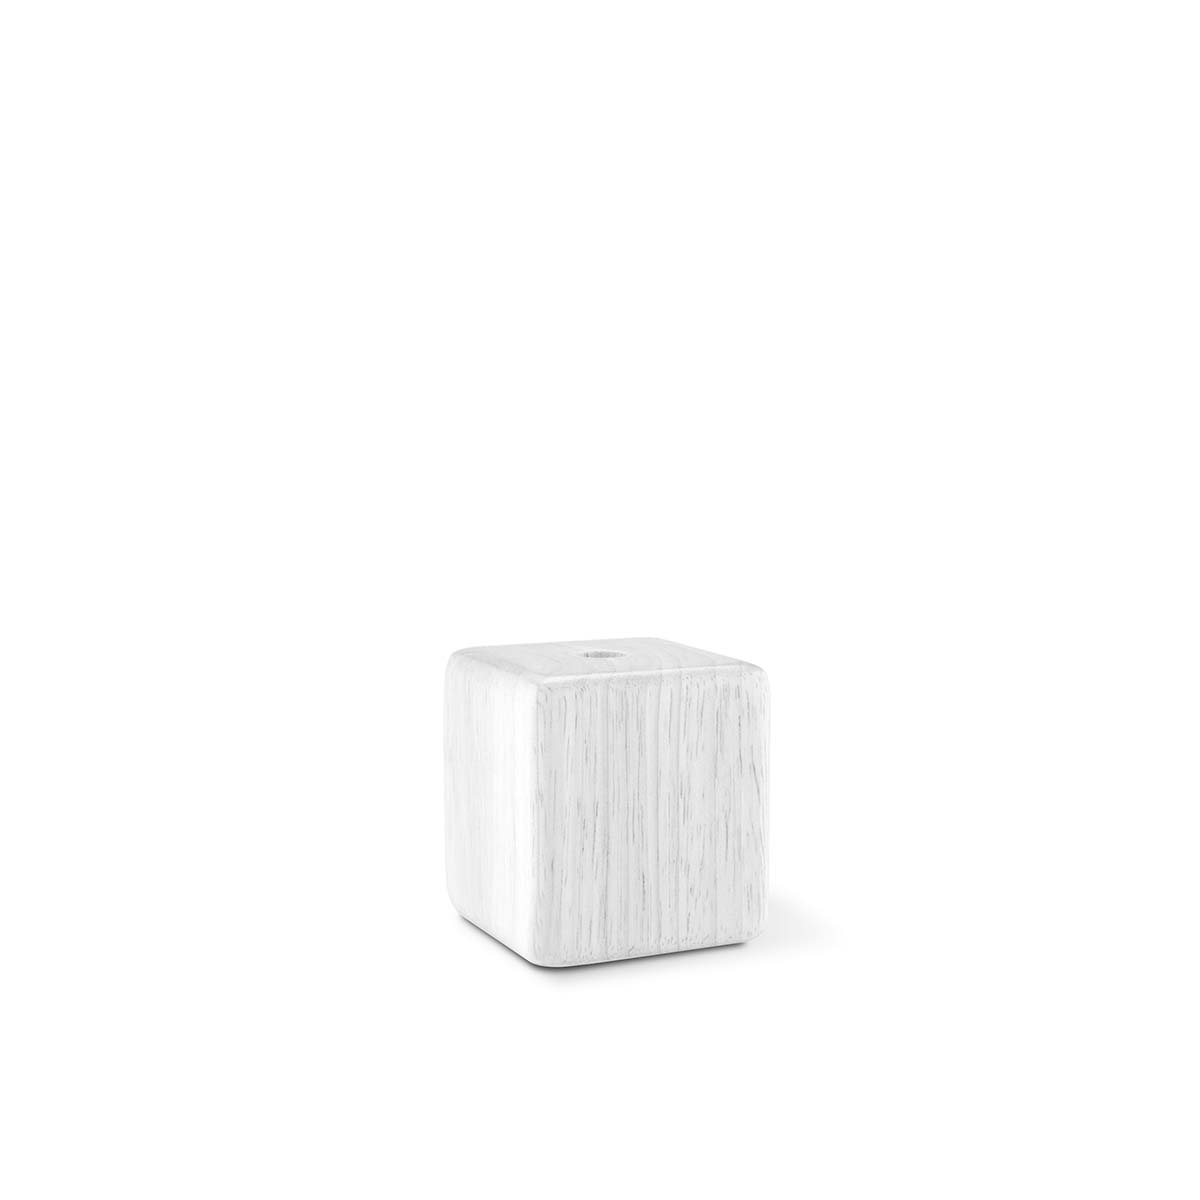 Tangla lighting - TLLH019WT - lamp holder wood - E27 - cube - white